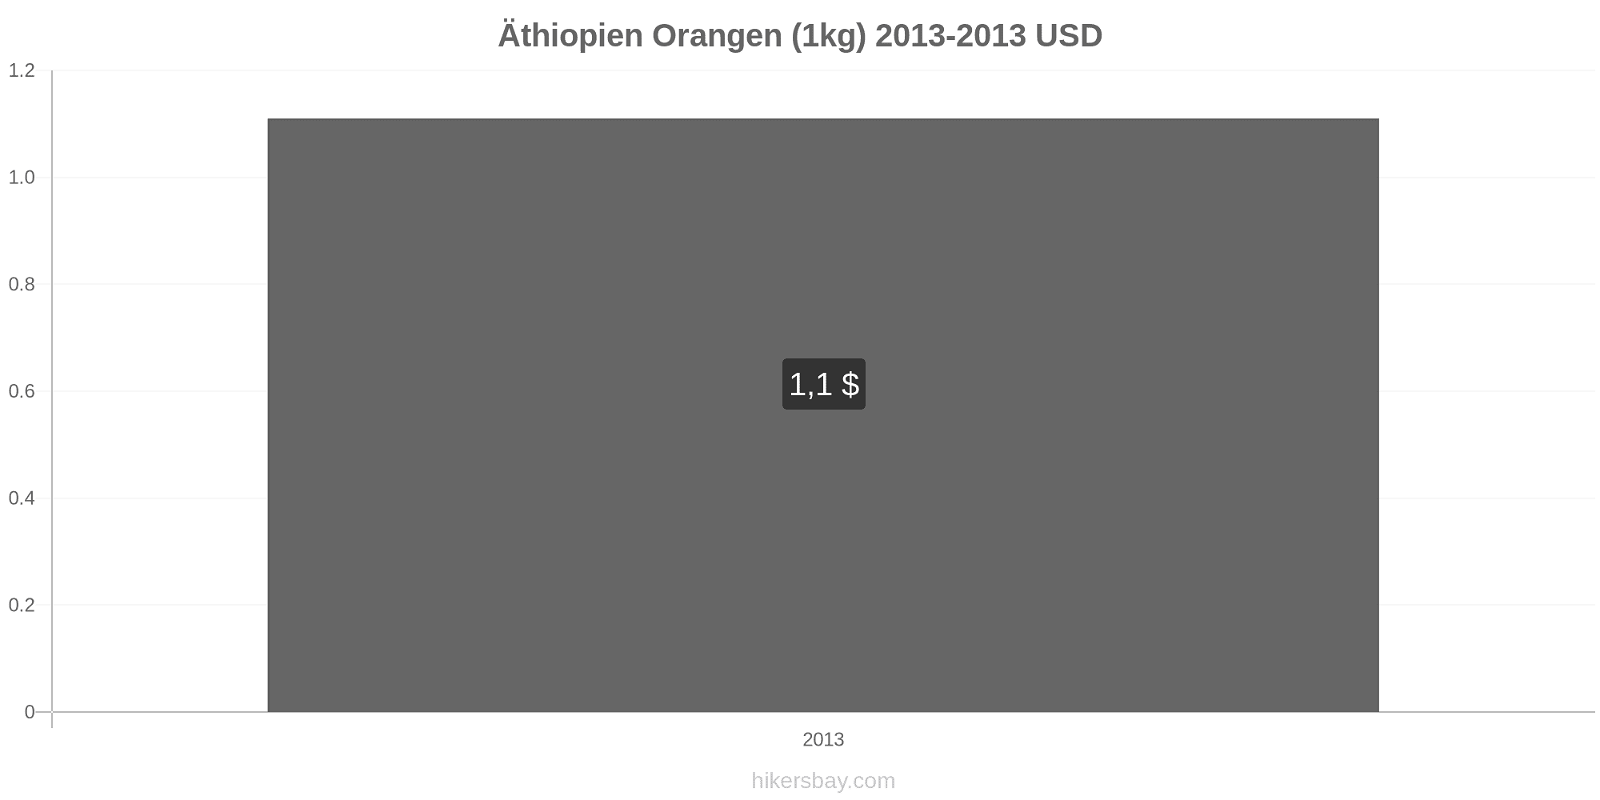 Äthiopien Preisänderungen Orangen (1kg) hikersbay.com